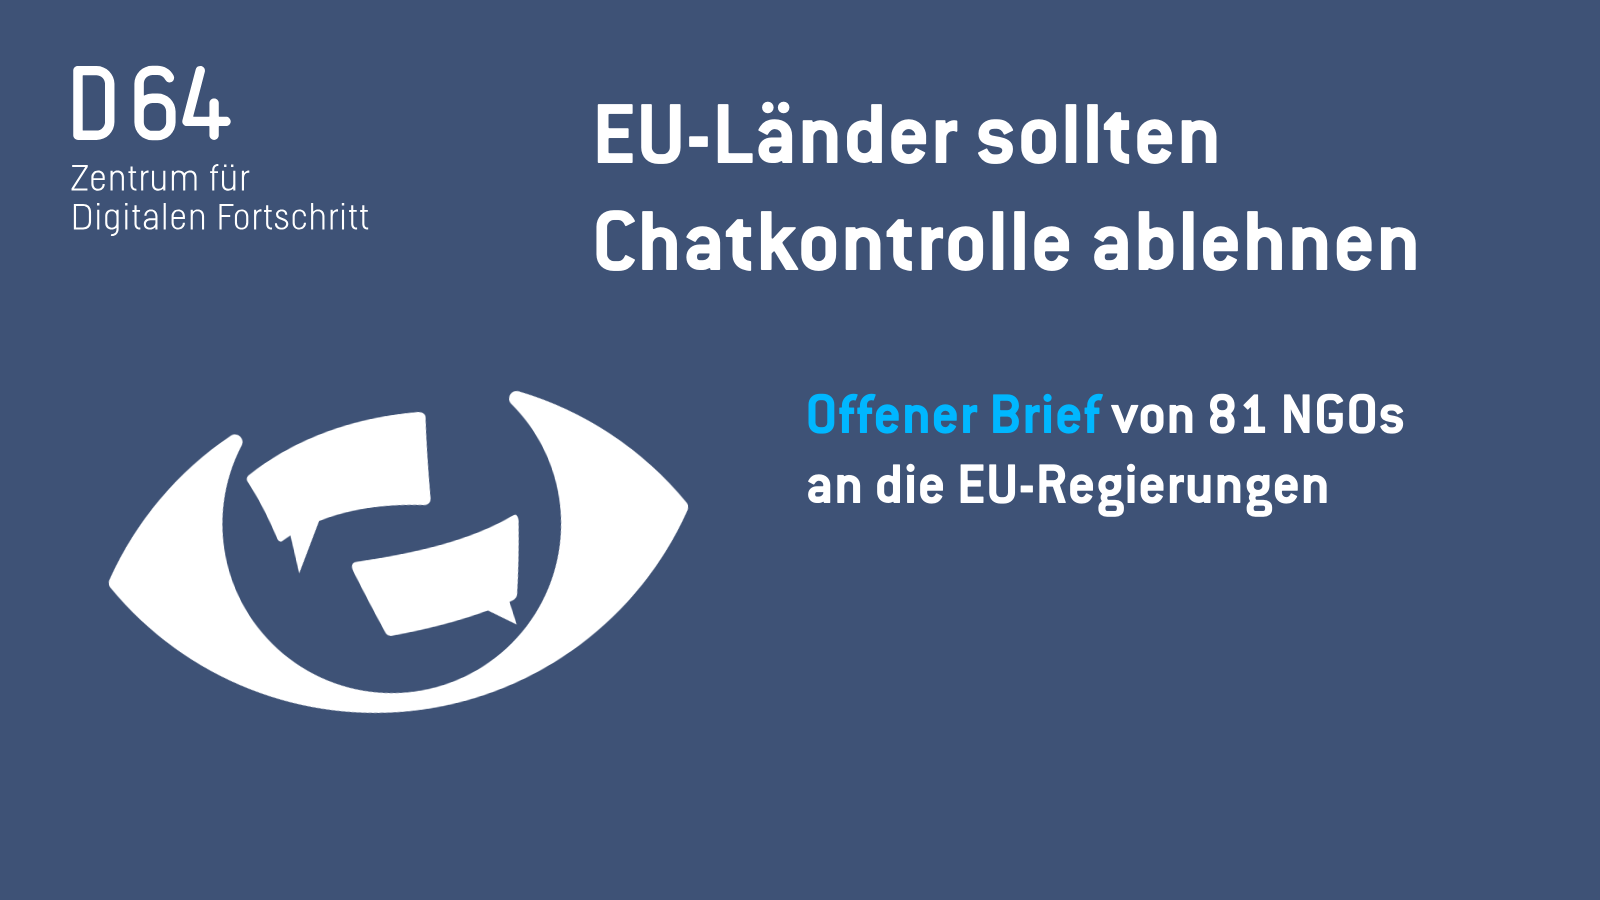 EU-Länder sollten Chatkontrolle ablehnen Offener Brief von 81 NGOs an die EU-Regierungen